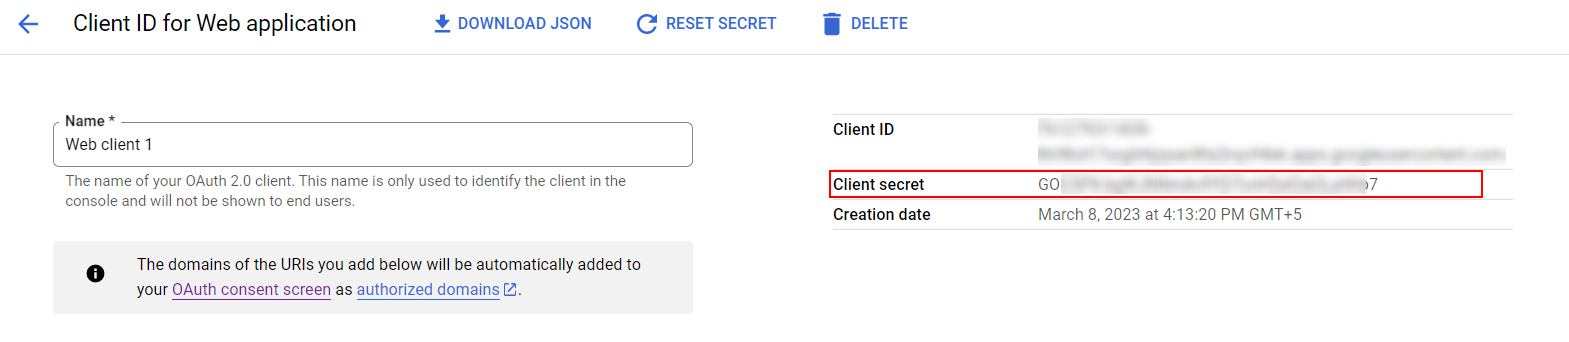 Copy your Client Secret